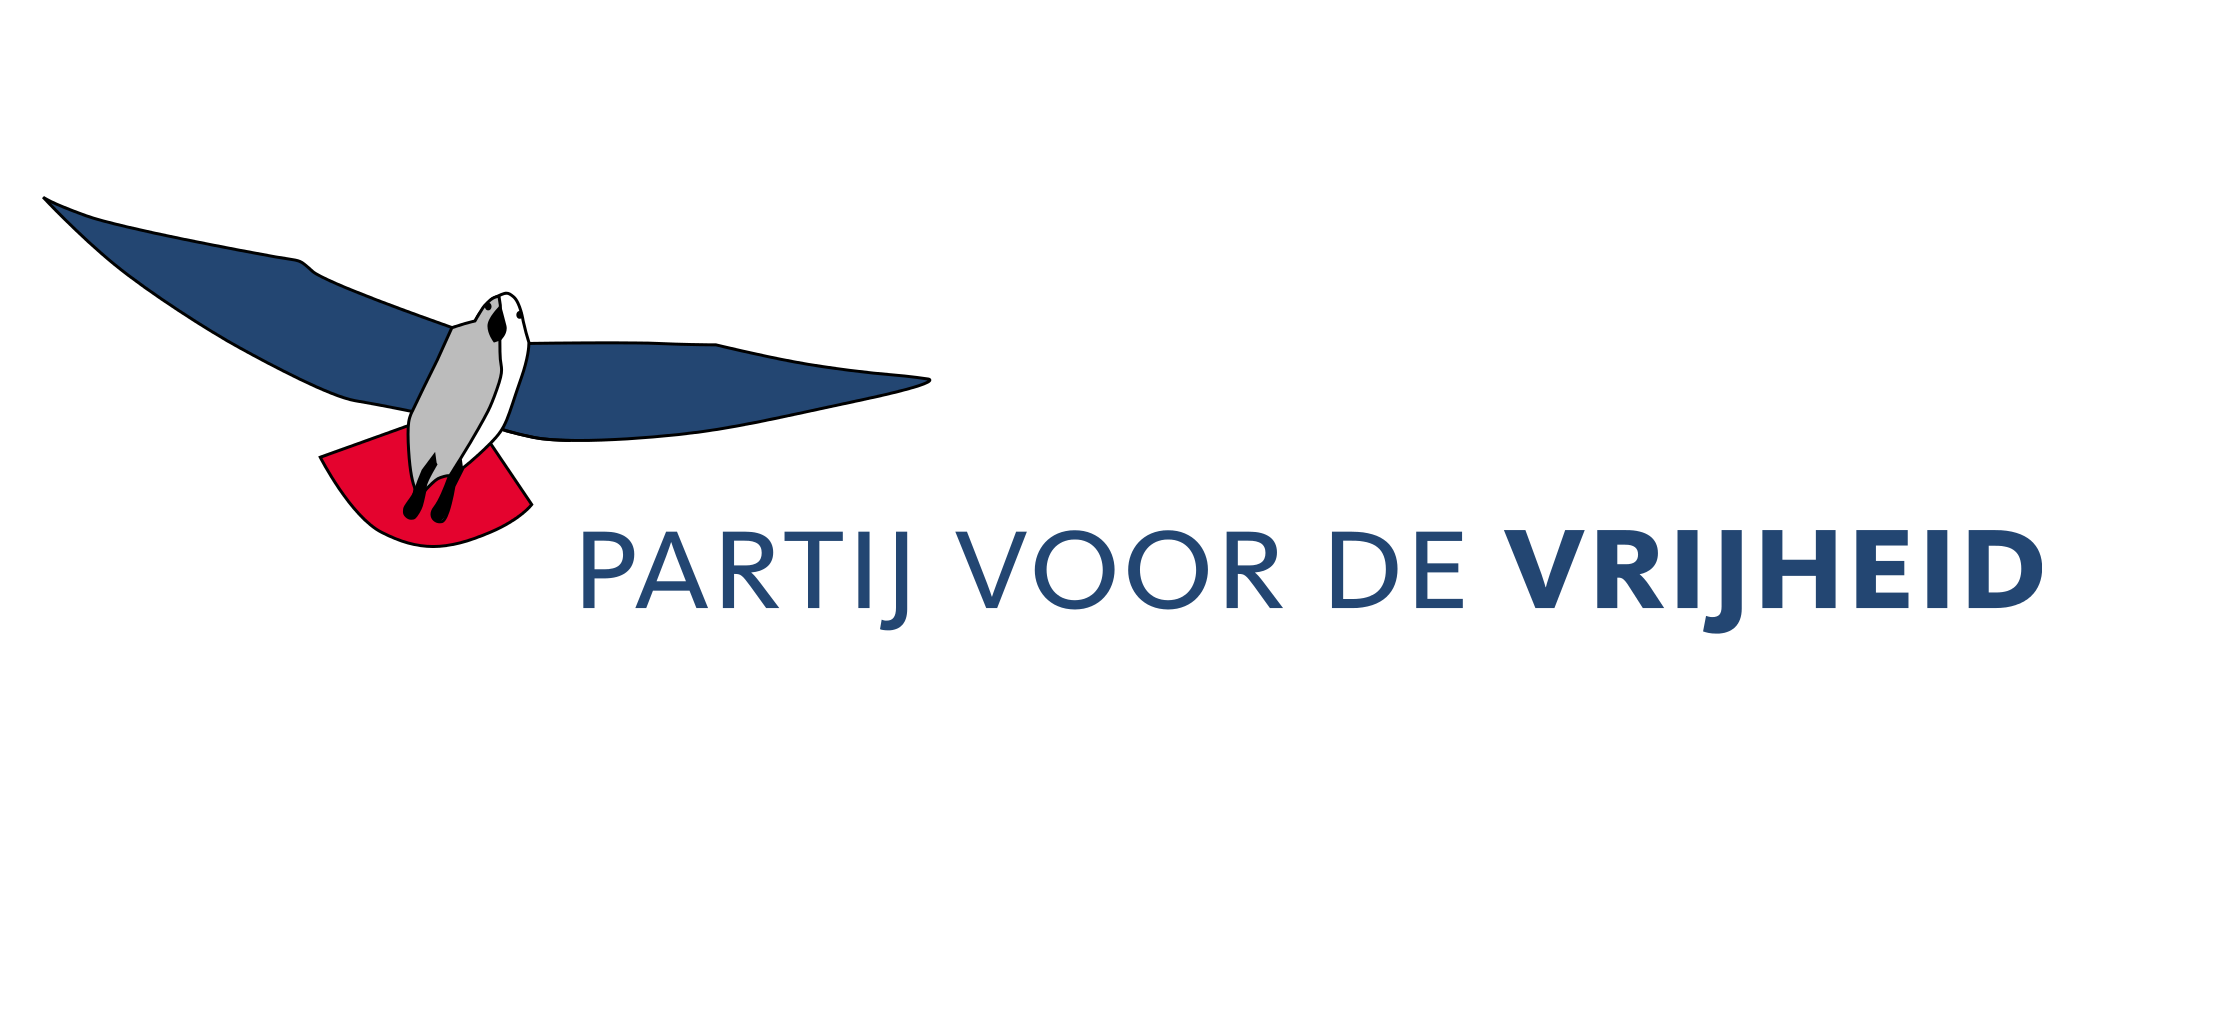 Maakt de PVV nog kans op jouw stem? 10